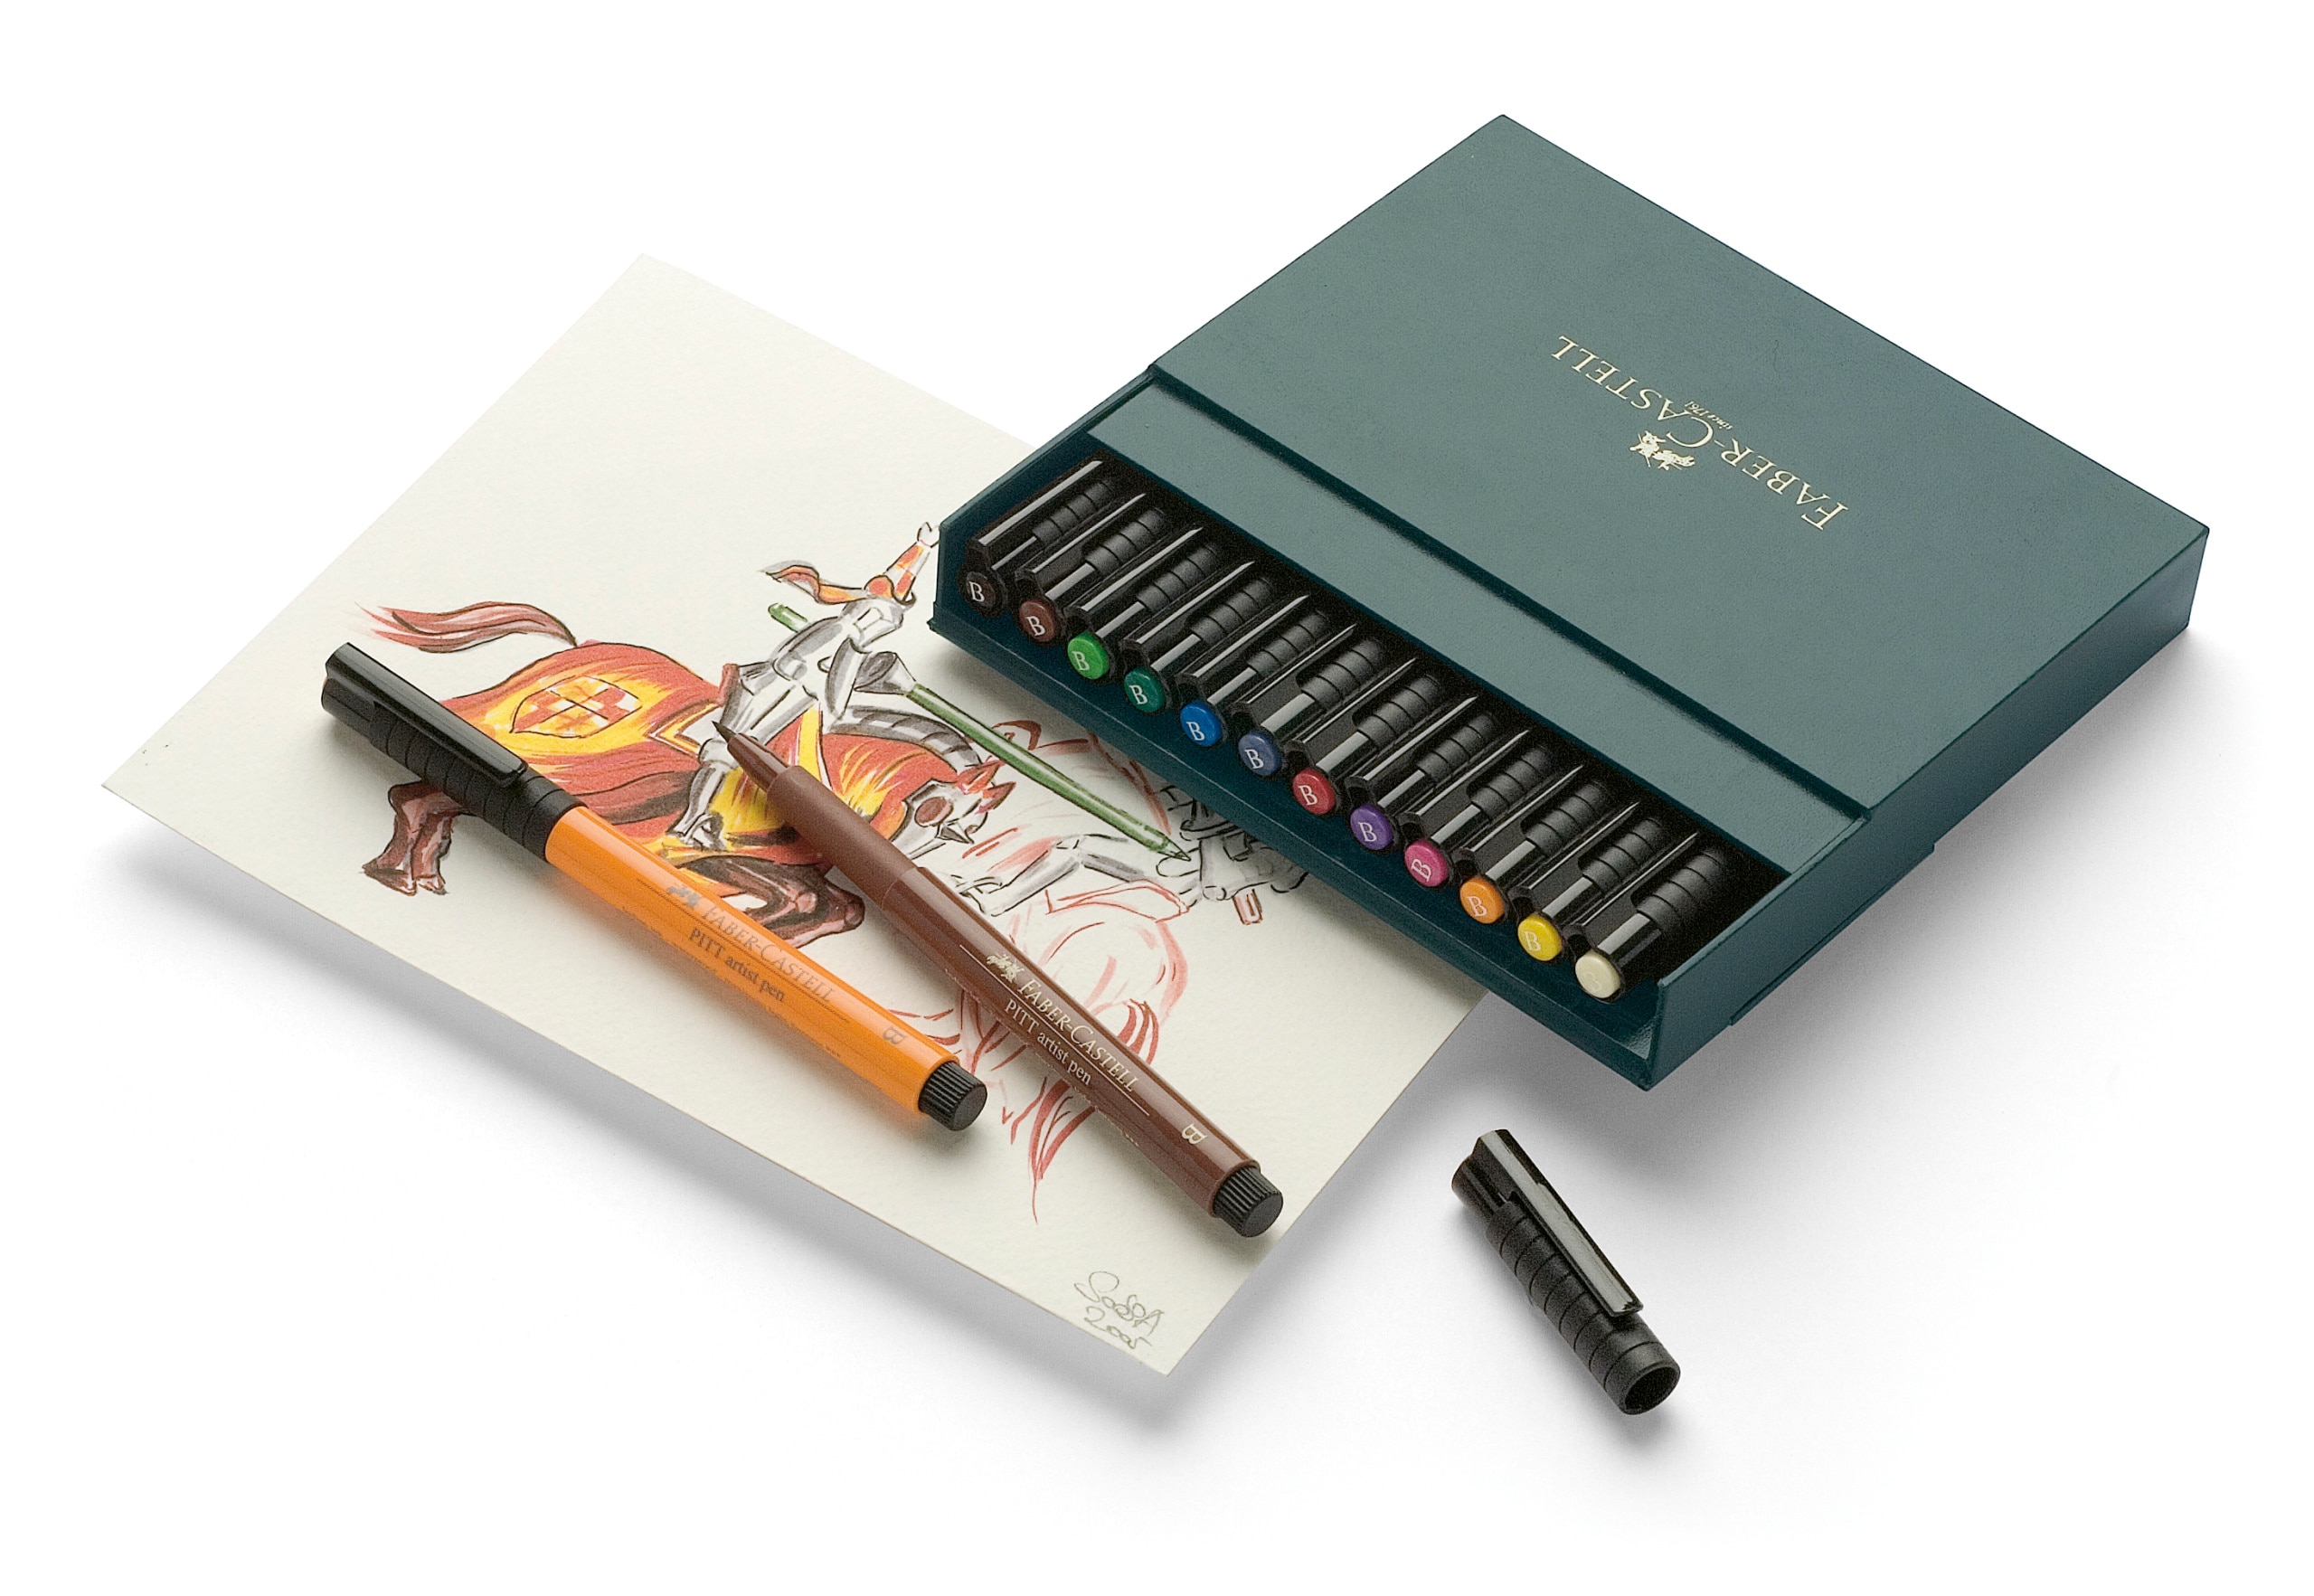 Faber Castell : Pitt Artist's Brush Pens